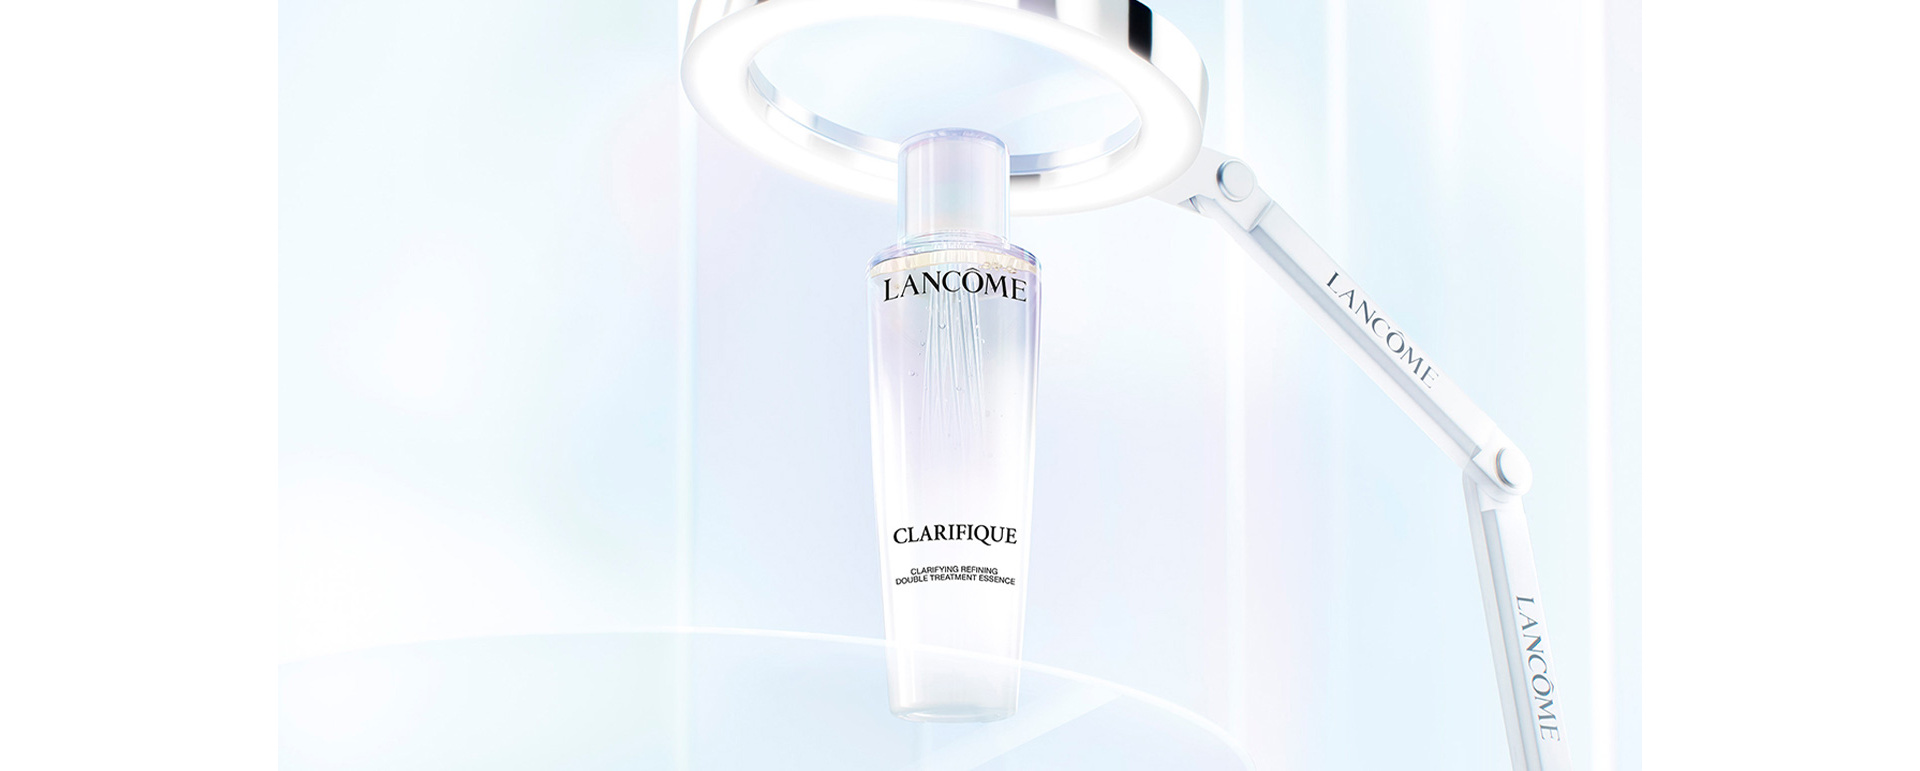 Lancome's new Clarifique Serum